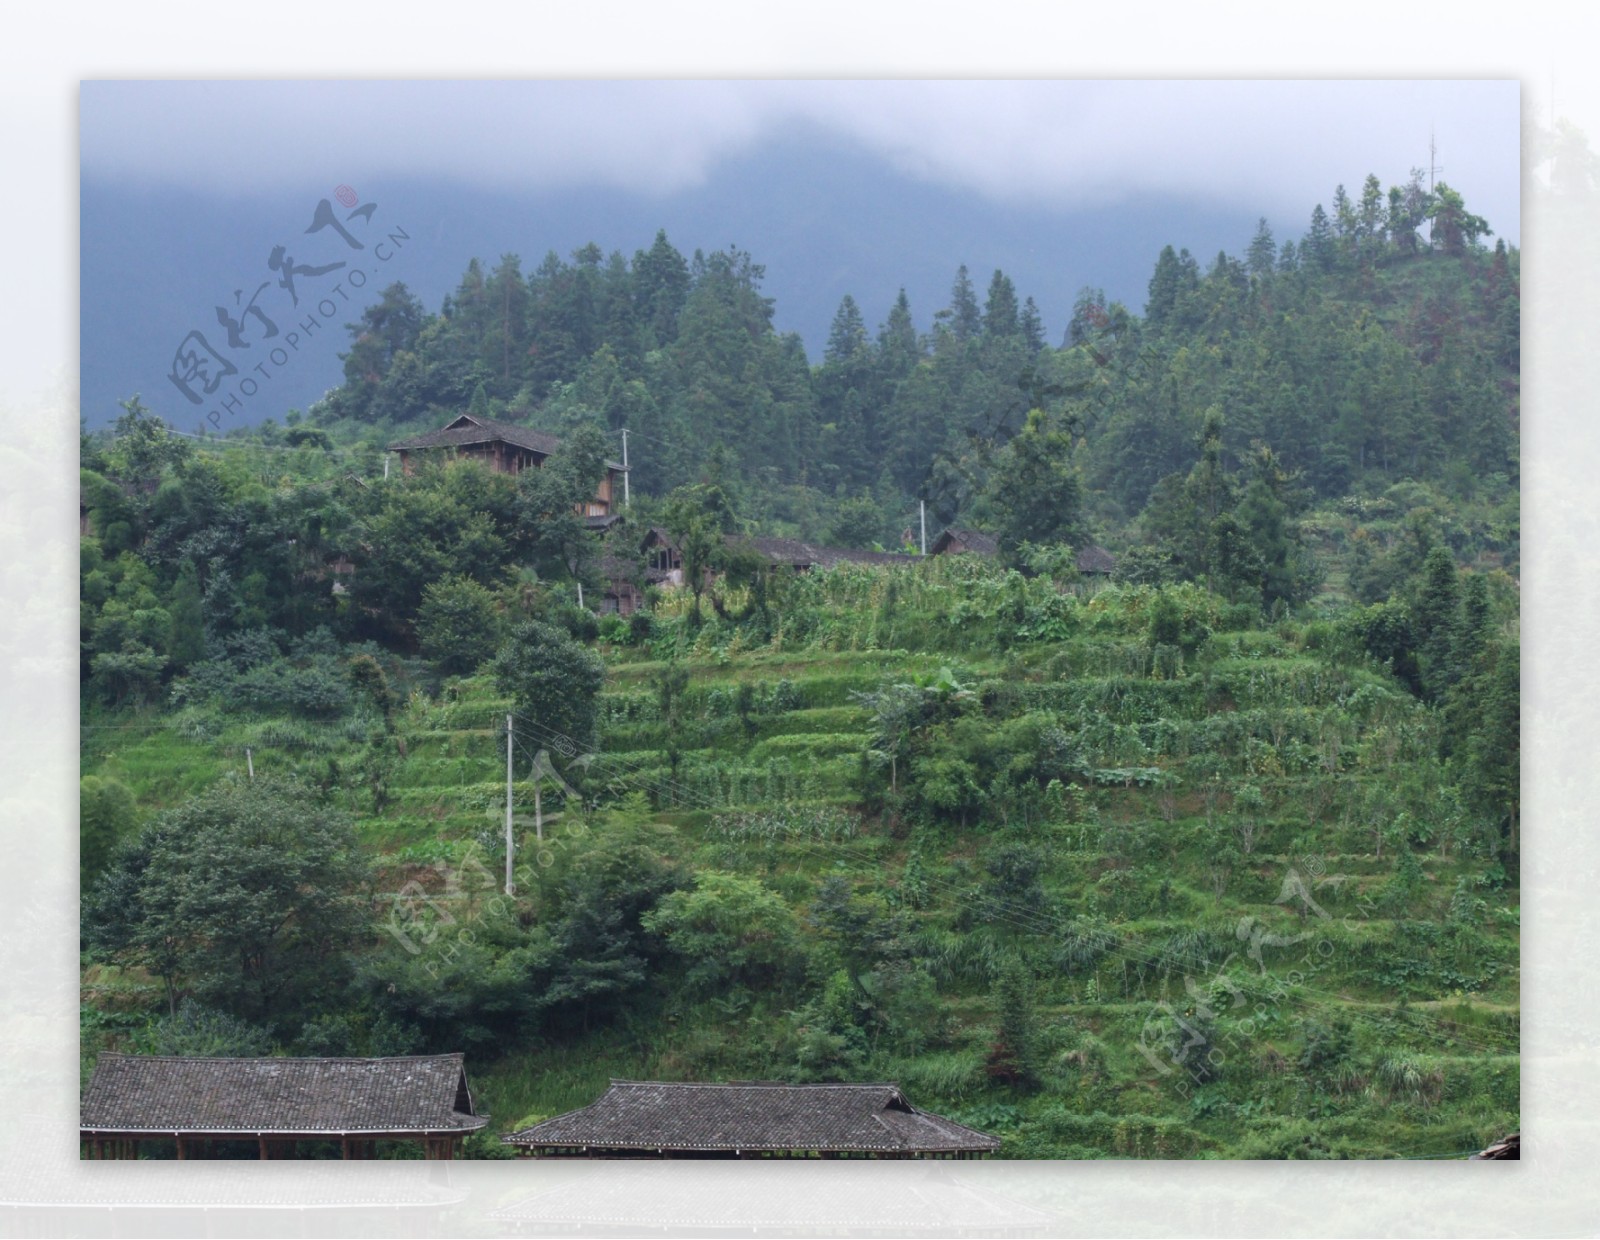 桂林风景